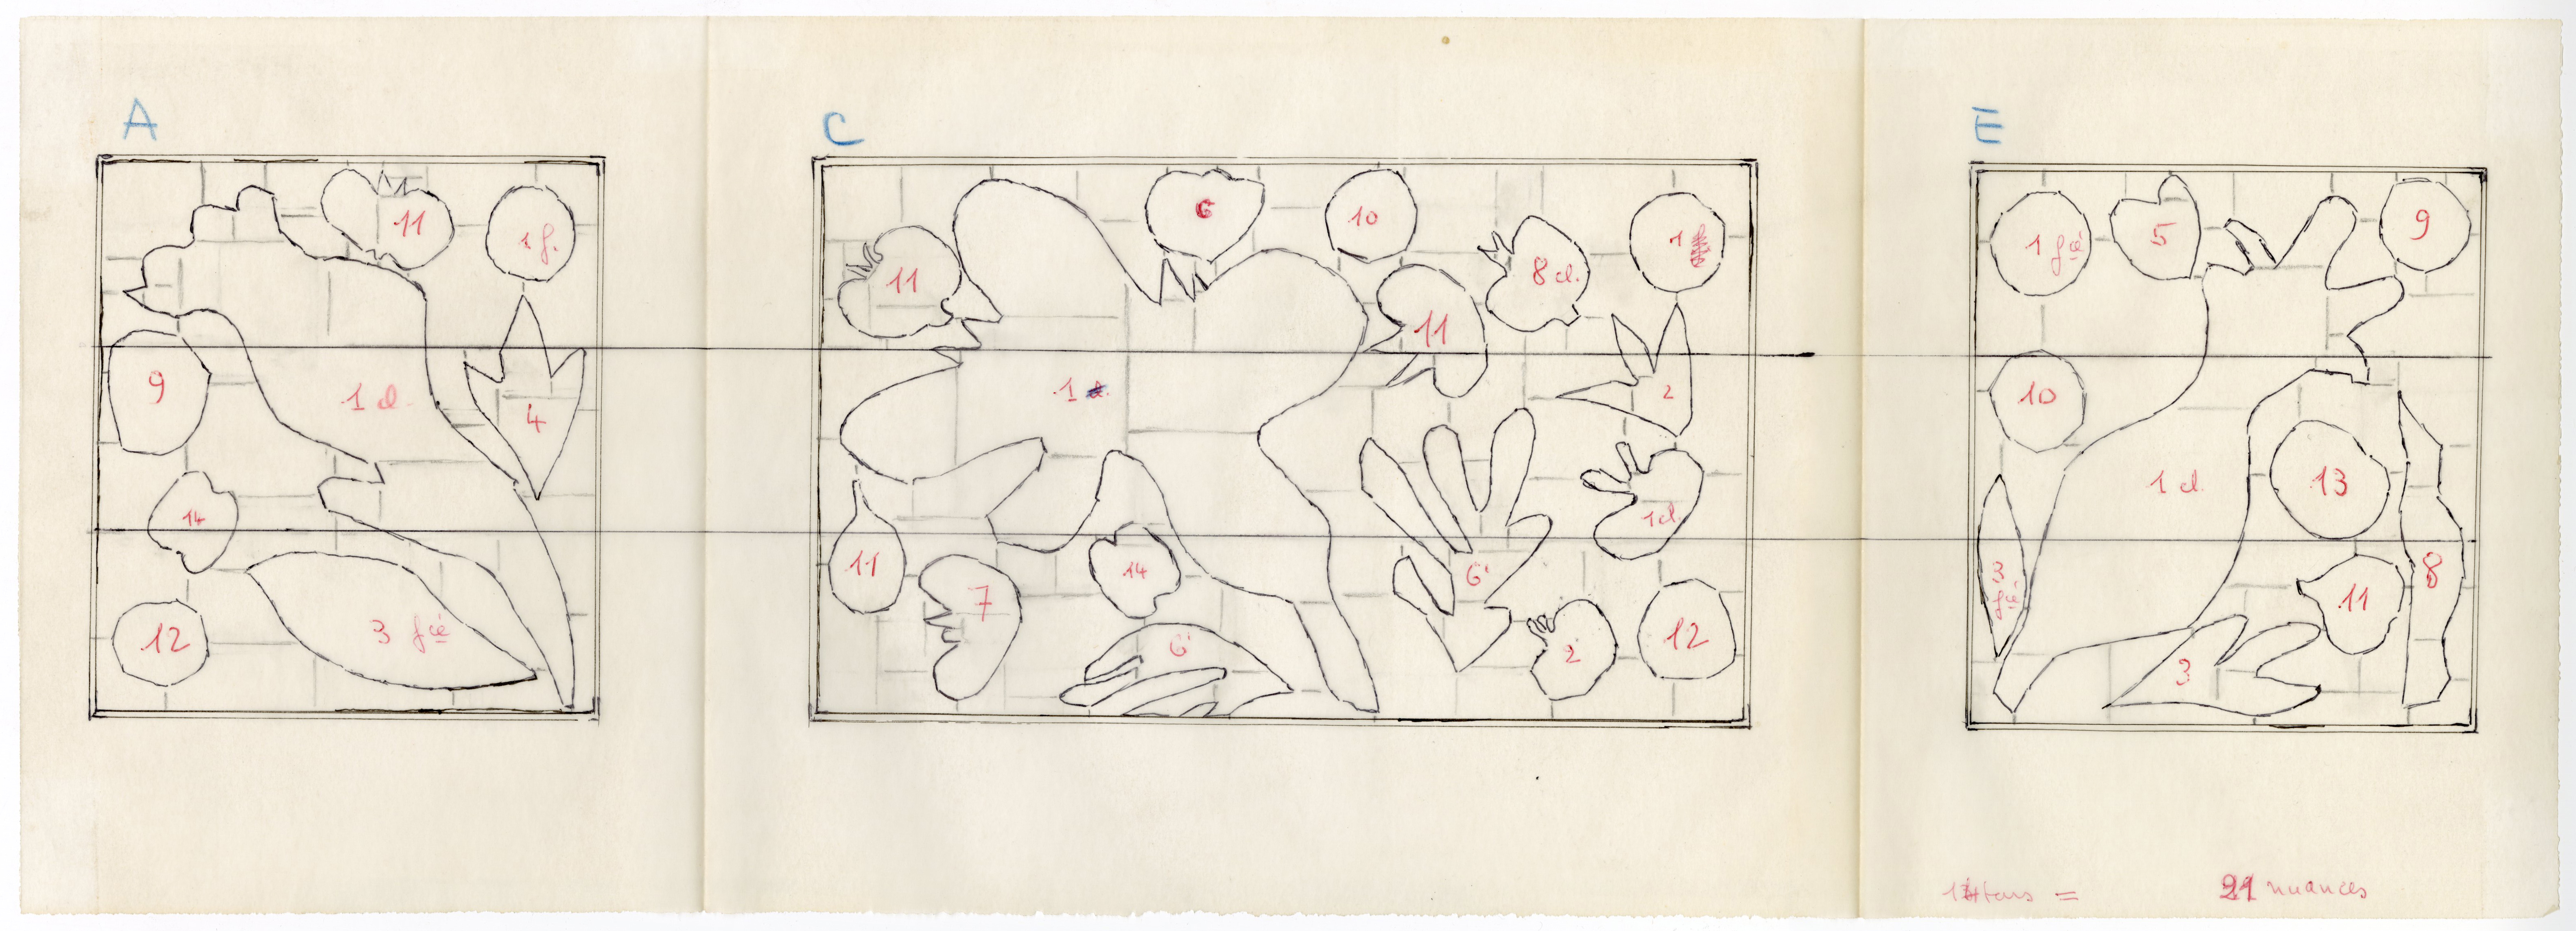 Croquis du vitrail (les numéros correspondent aux couleurs voulues par Matisse), sans date